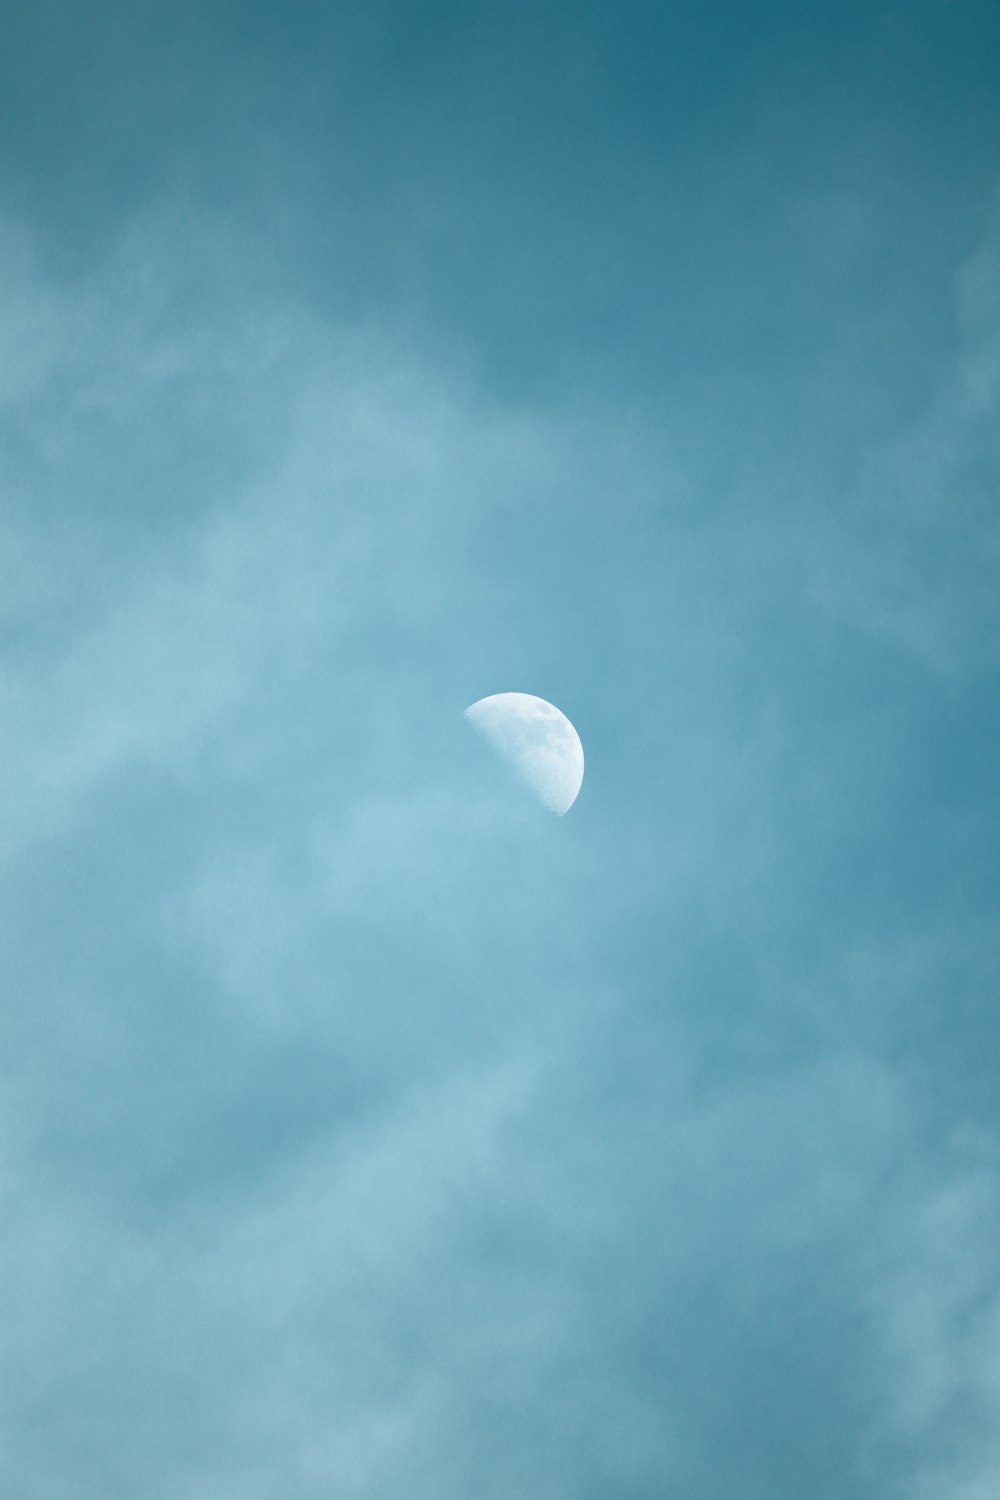 Lune blanche dans le ciel bleu